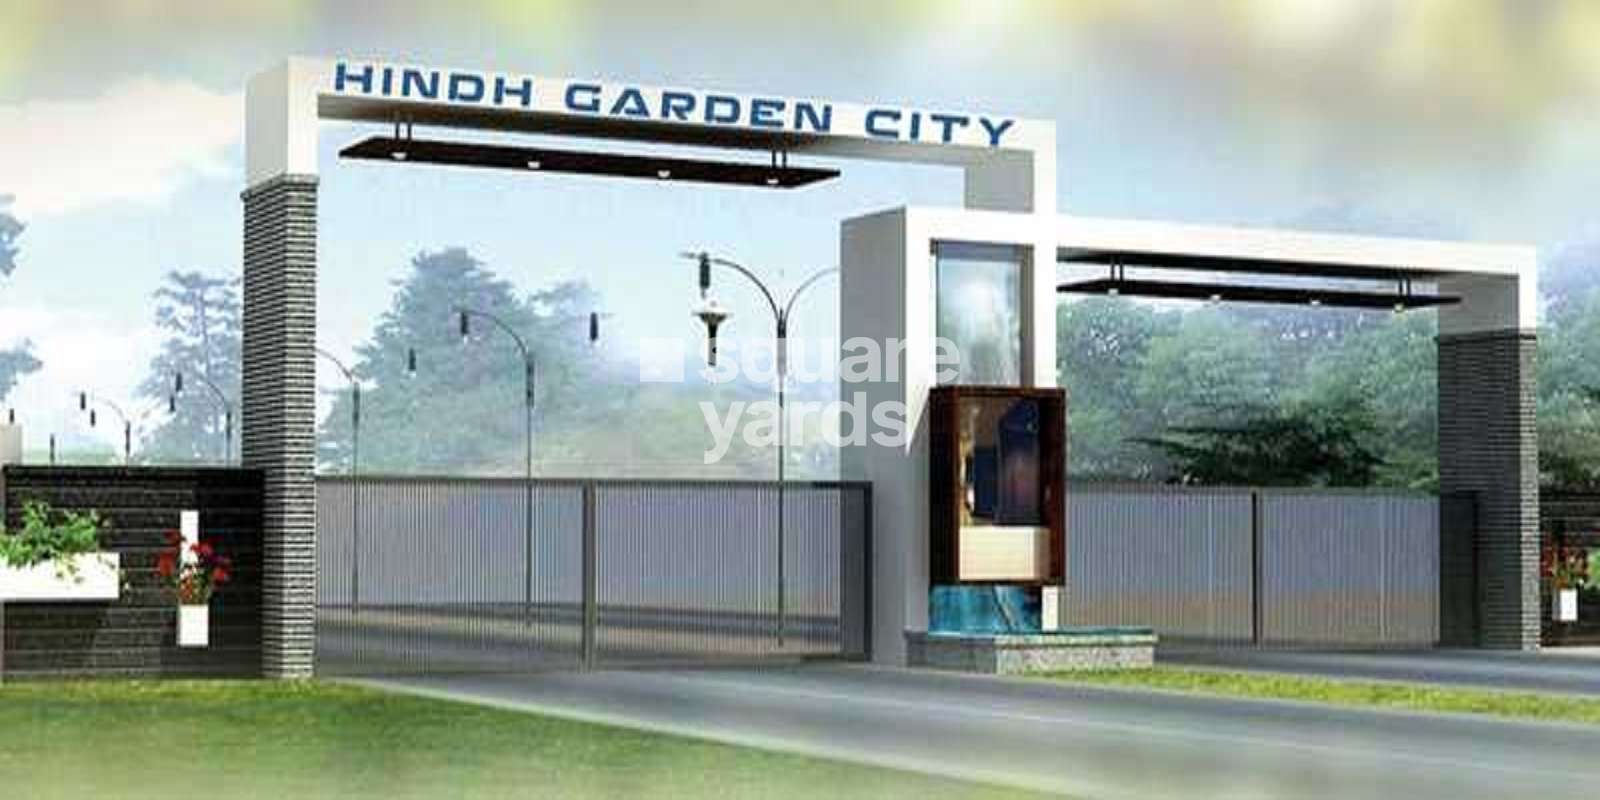 Hindh Garden City Cover Image